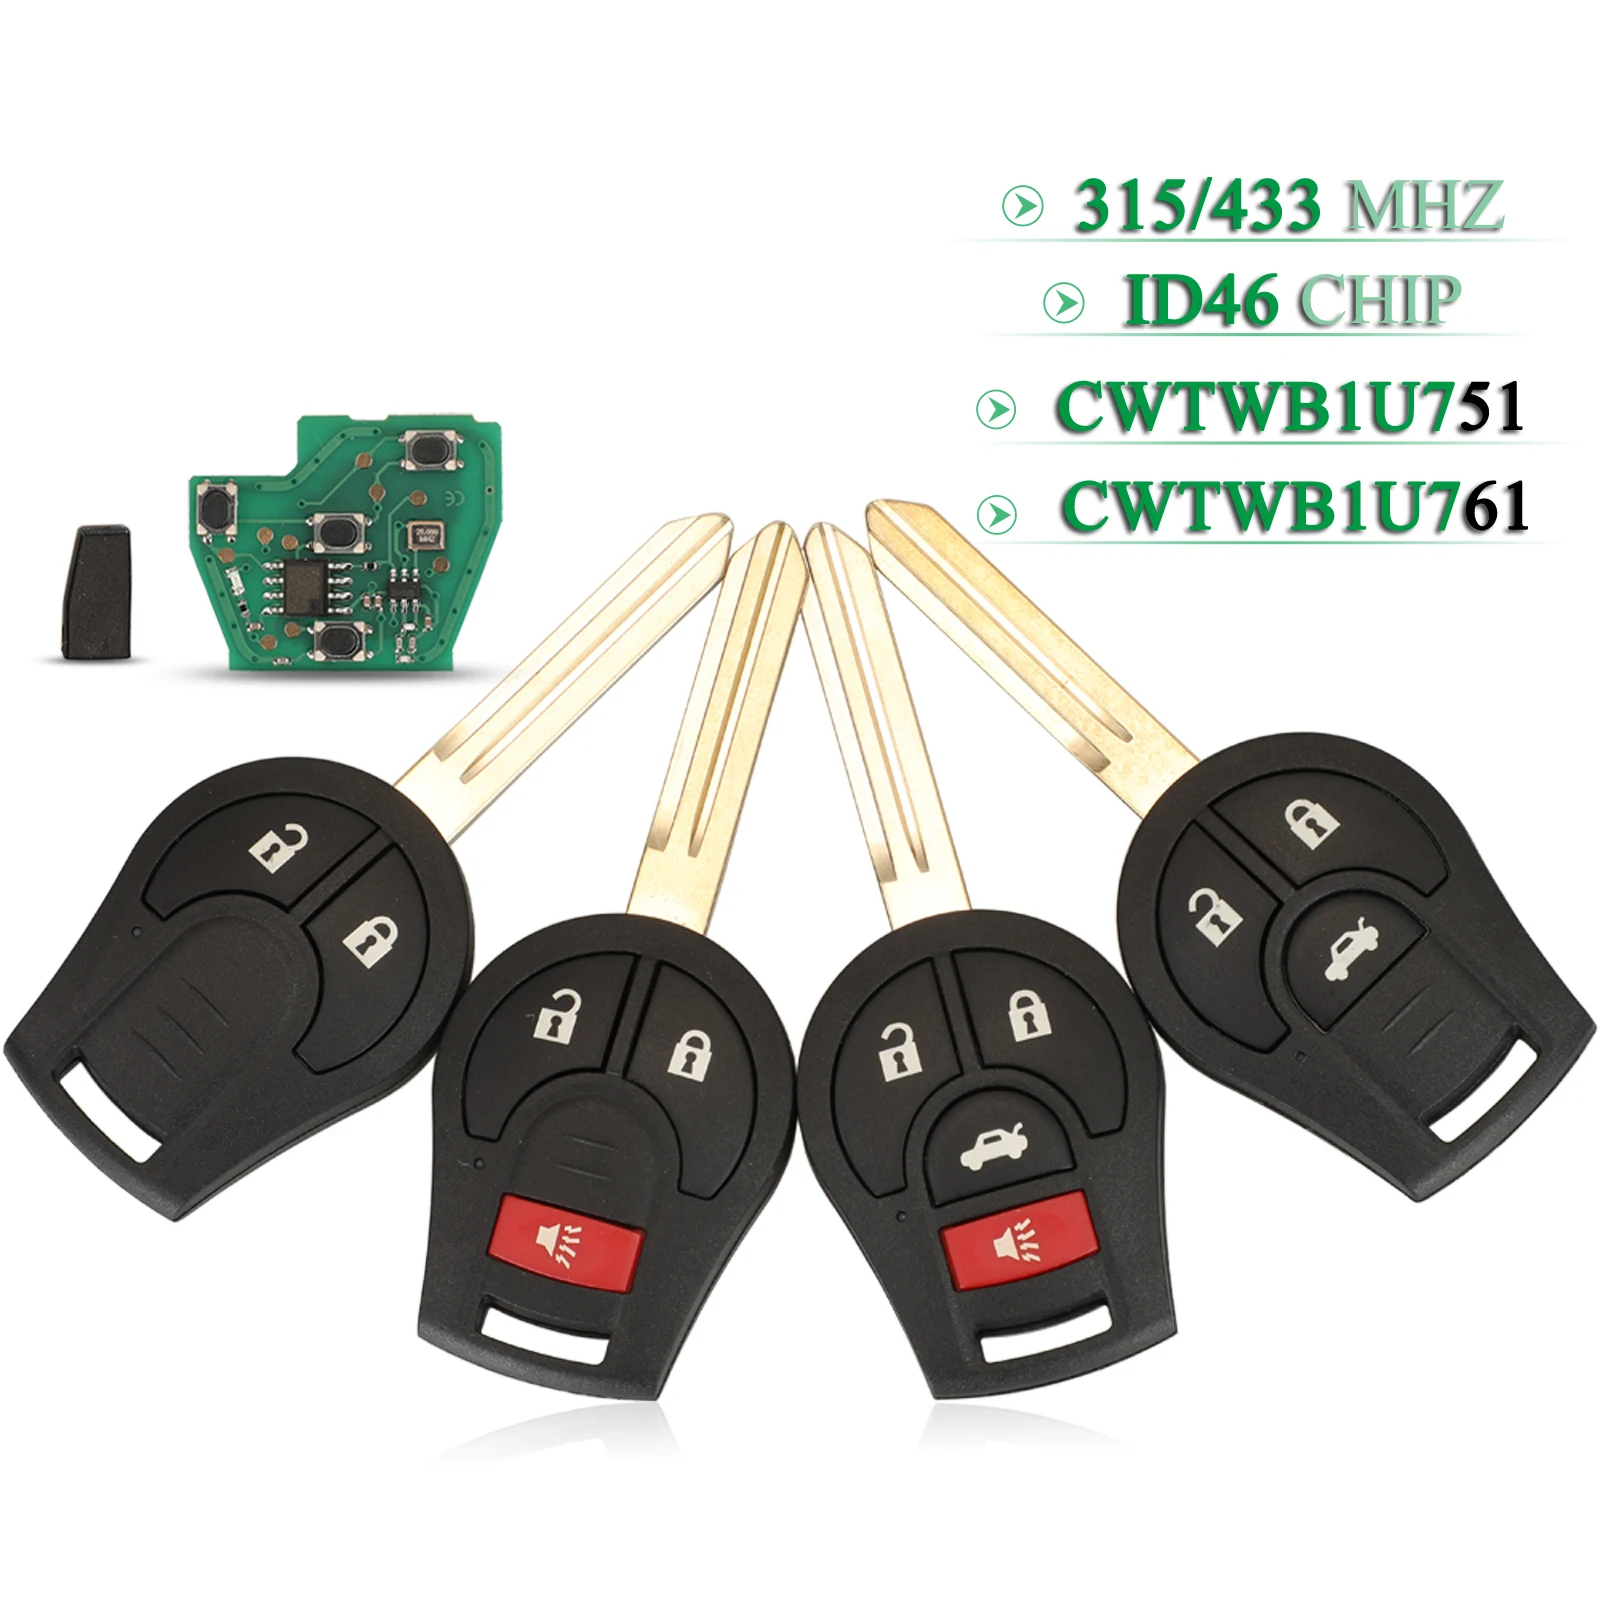 jingyuqin 2/3/4 Buttons For Nissan Rouge Armada Maxima Sentra Remote Car Key ID46 Chip 315/433Mhz CWTWB1U751 / CWTWB1U761 Fob